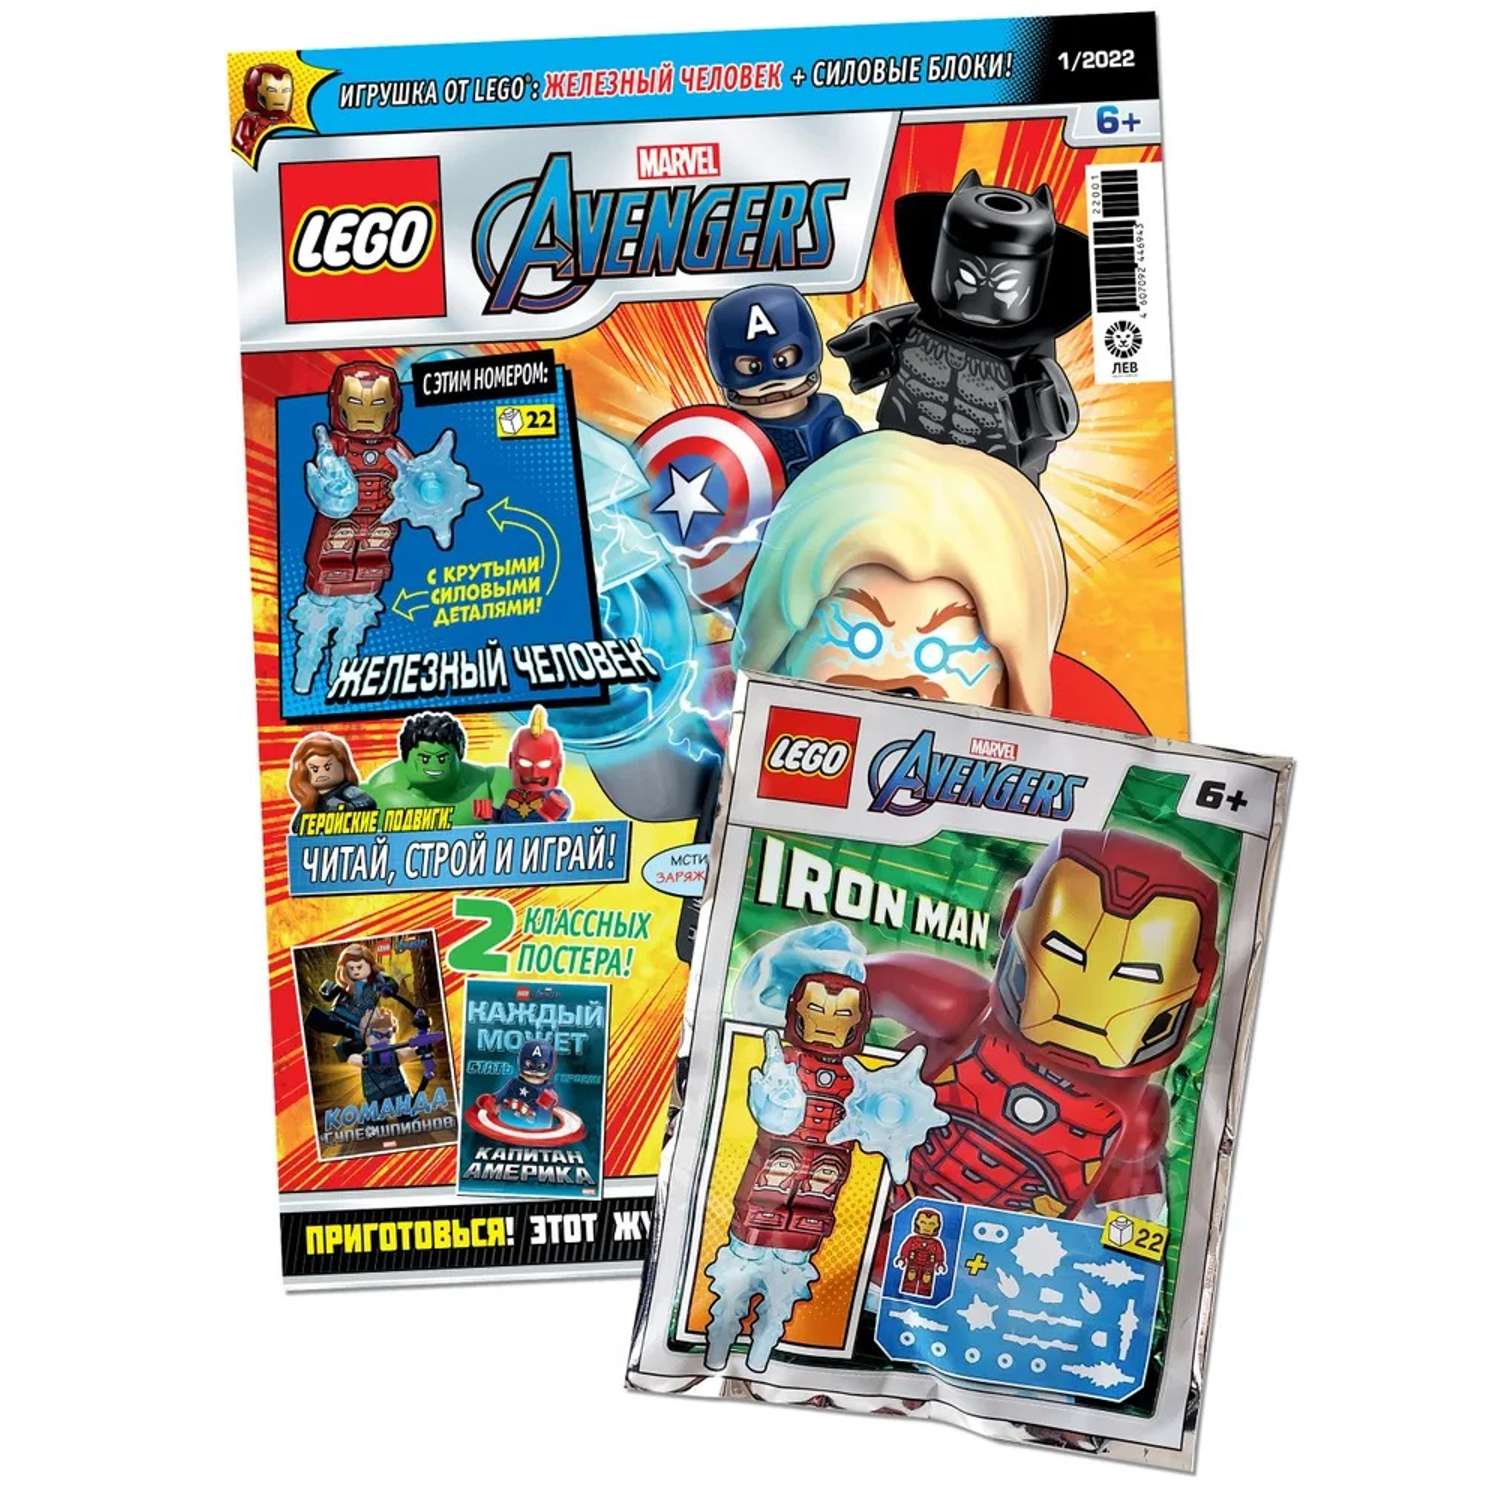 Журнал LEGO Коллекция MARVEL 1/2022 Конструктор. Лего марвел журнал для детей - фото 1